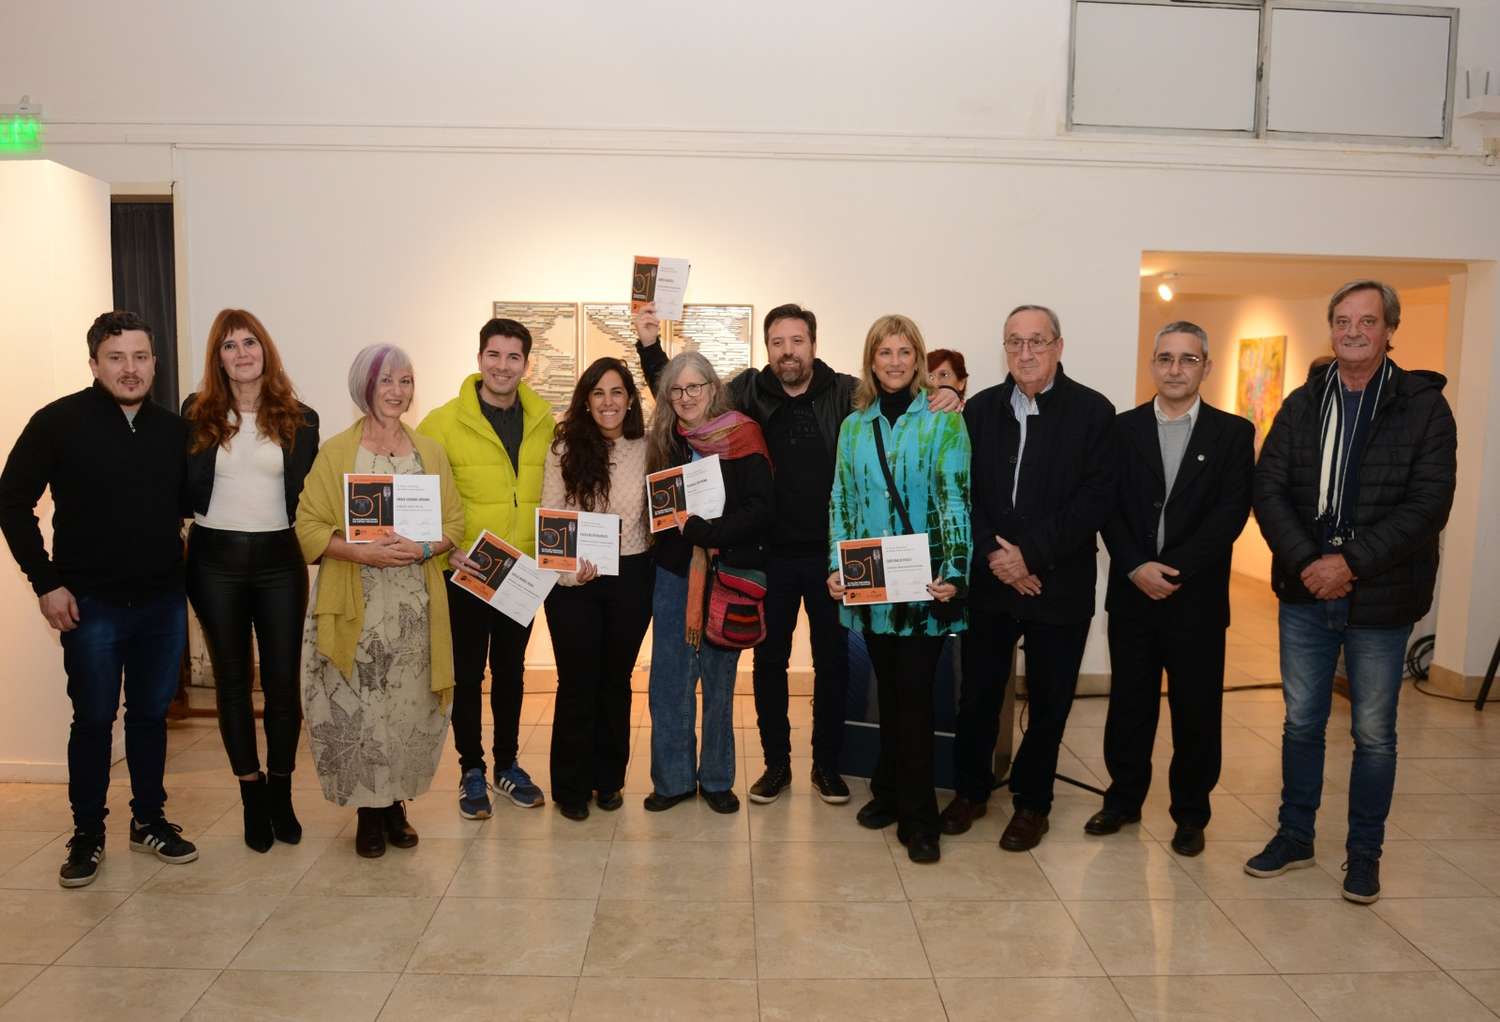 El Museo de Bellas Artes de Tandil inauguró su 51° Salón Nacional de Artes Visuales